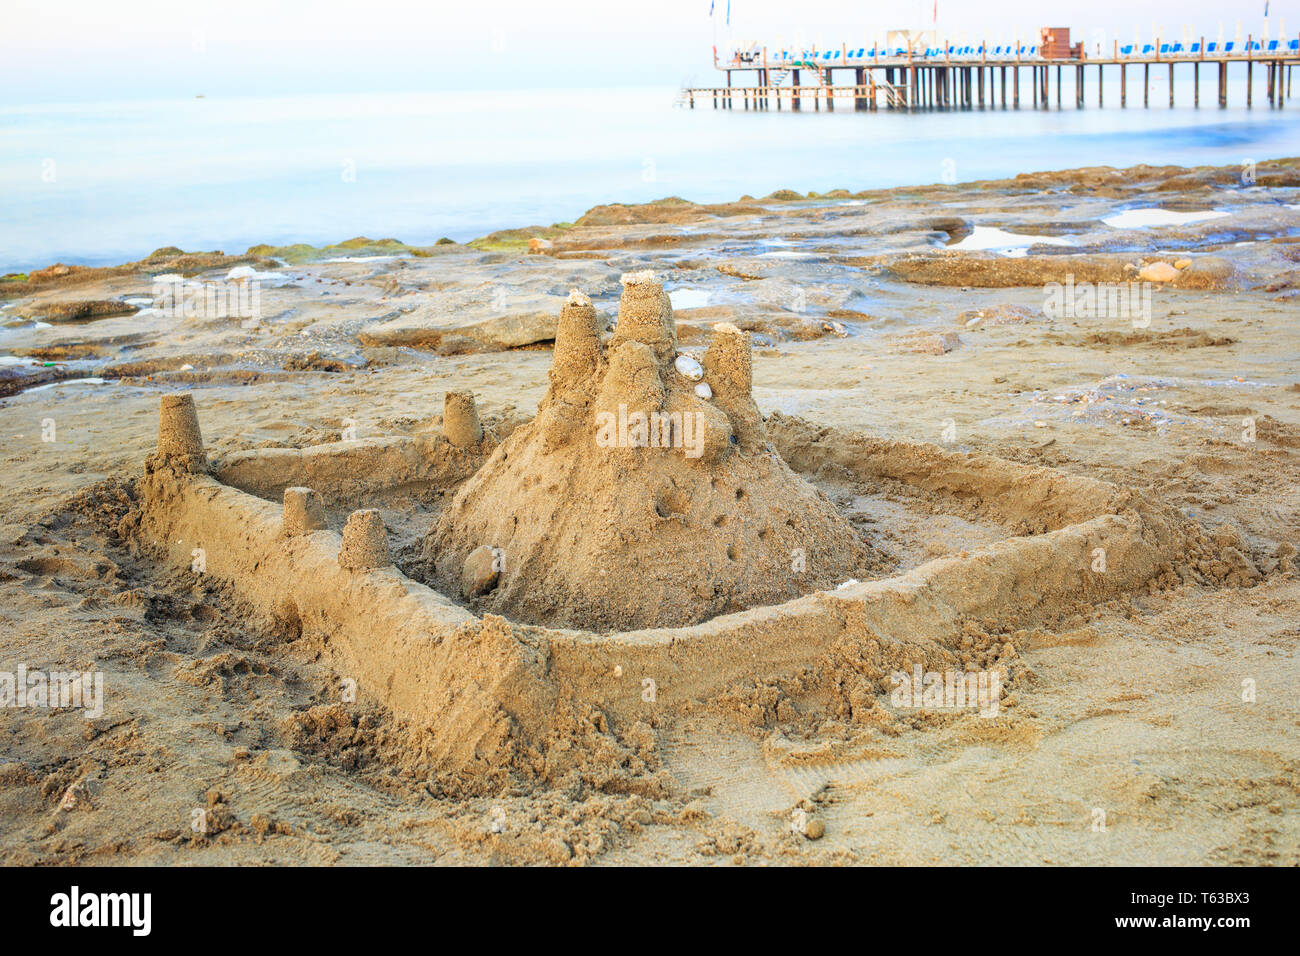 Castello di sabbia la mattina spiaggia sabbiosa. Foto Stock